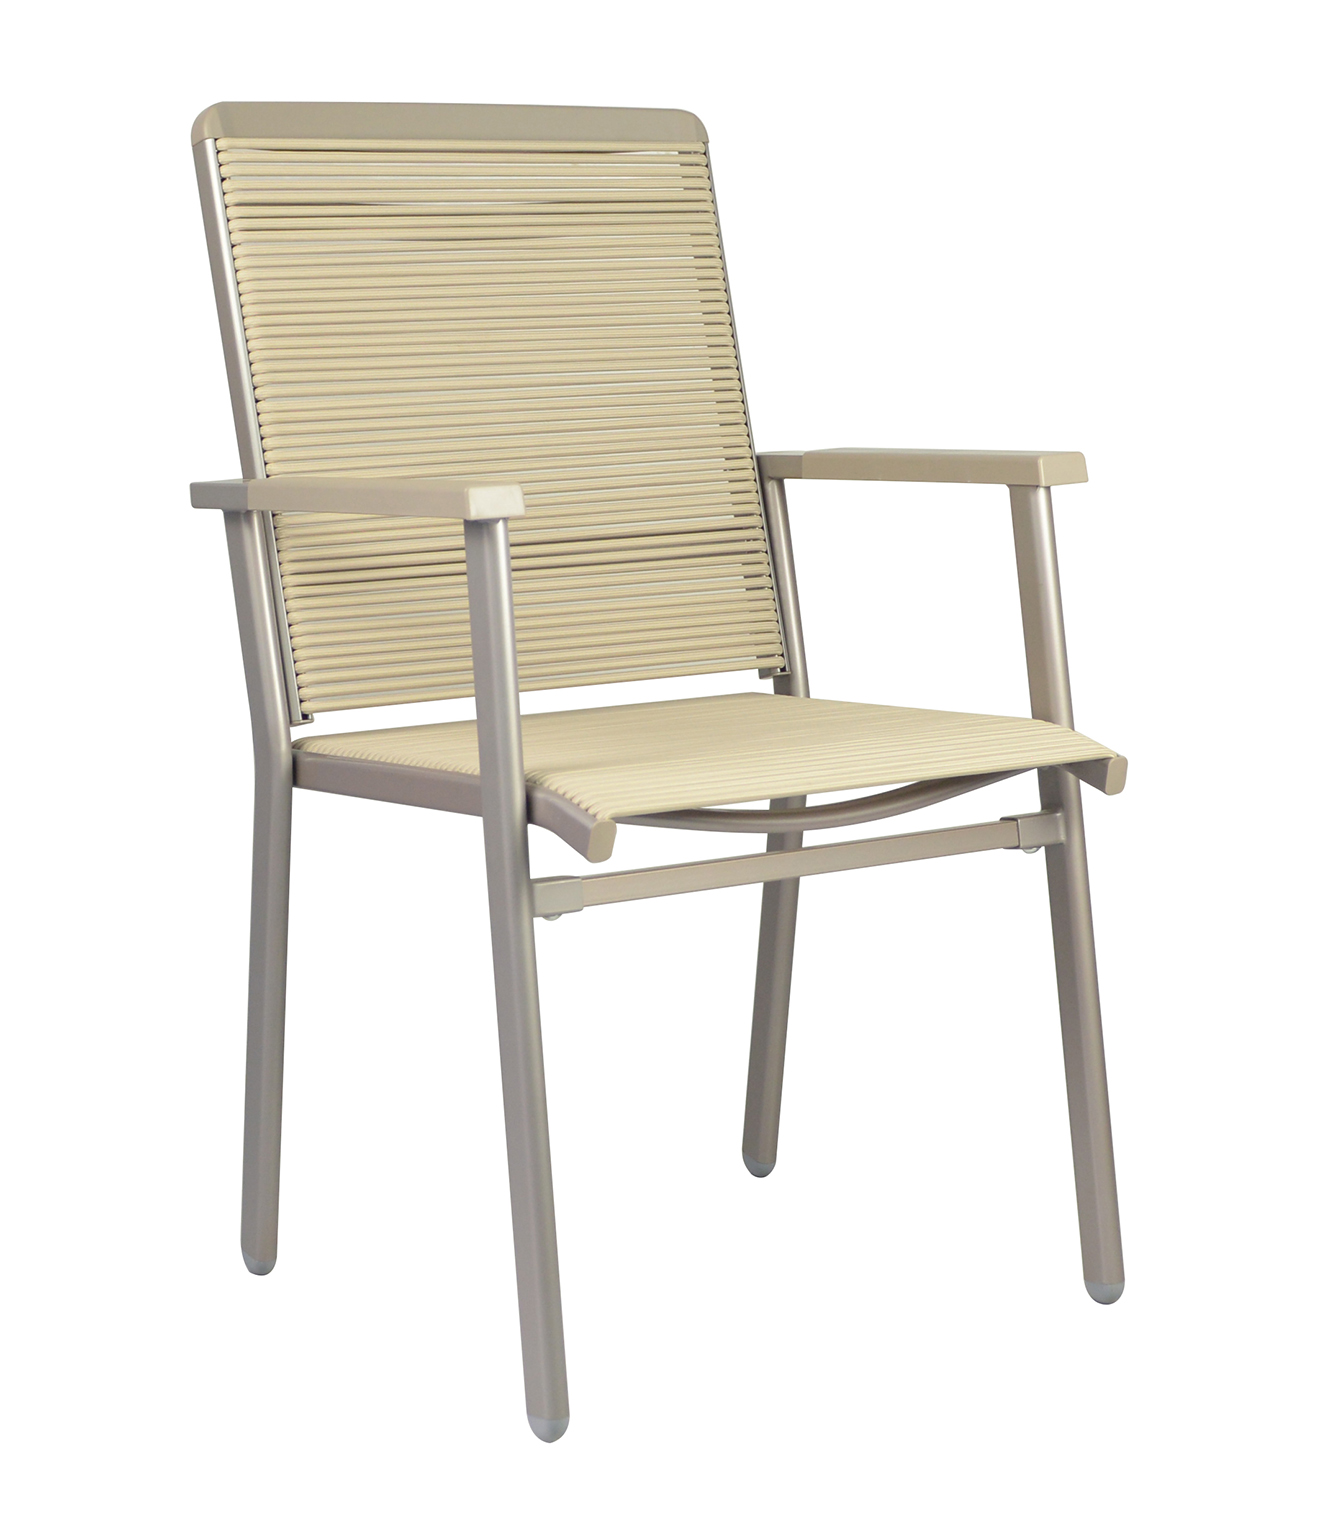 厂家直销703洽谈椅 居家餐椅办公椅 舒适简约麻将椅